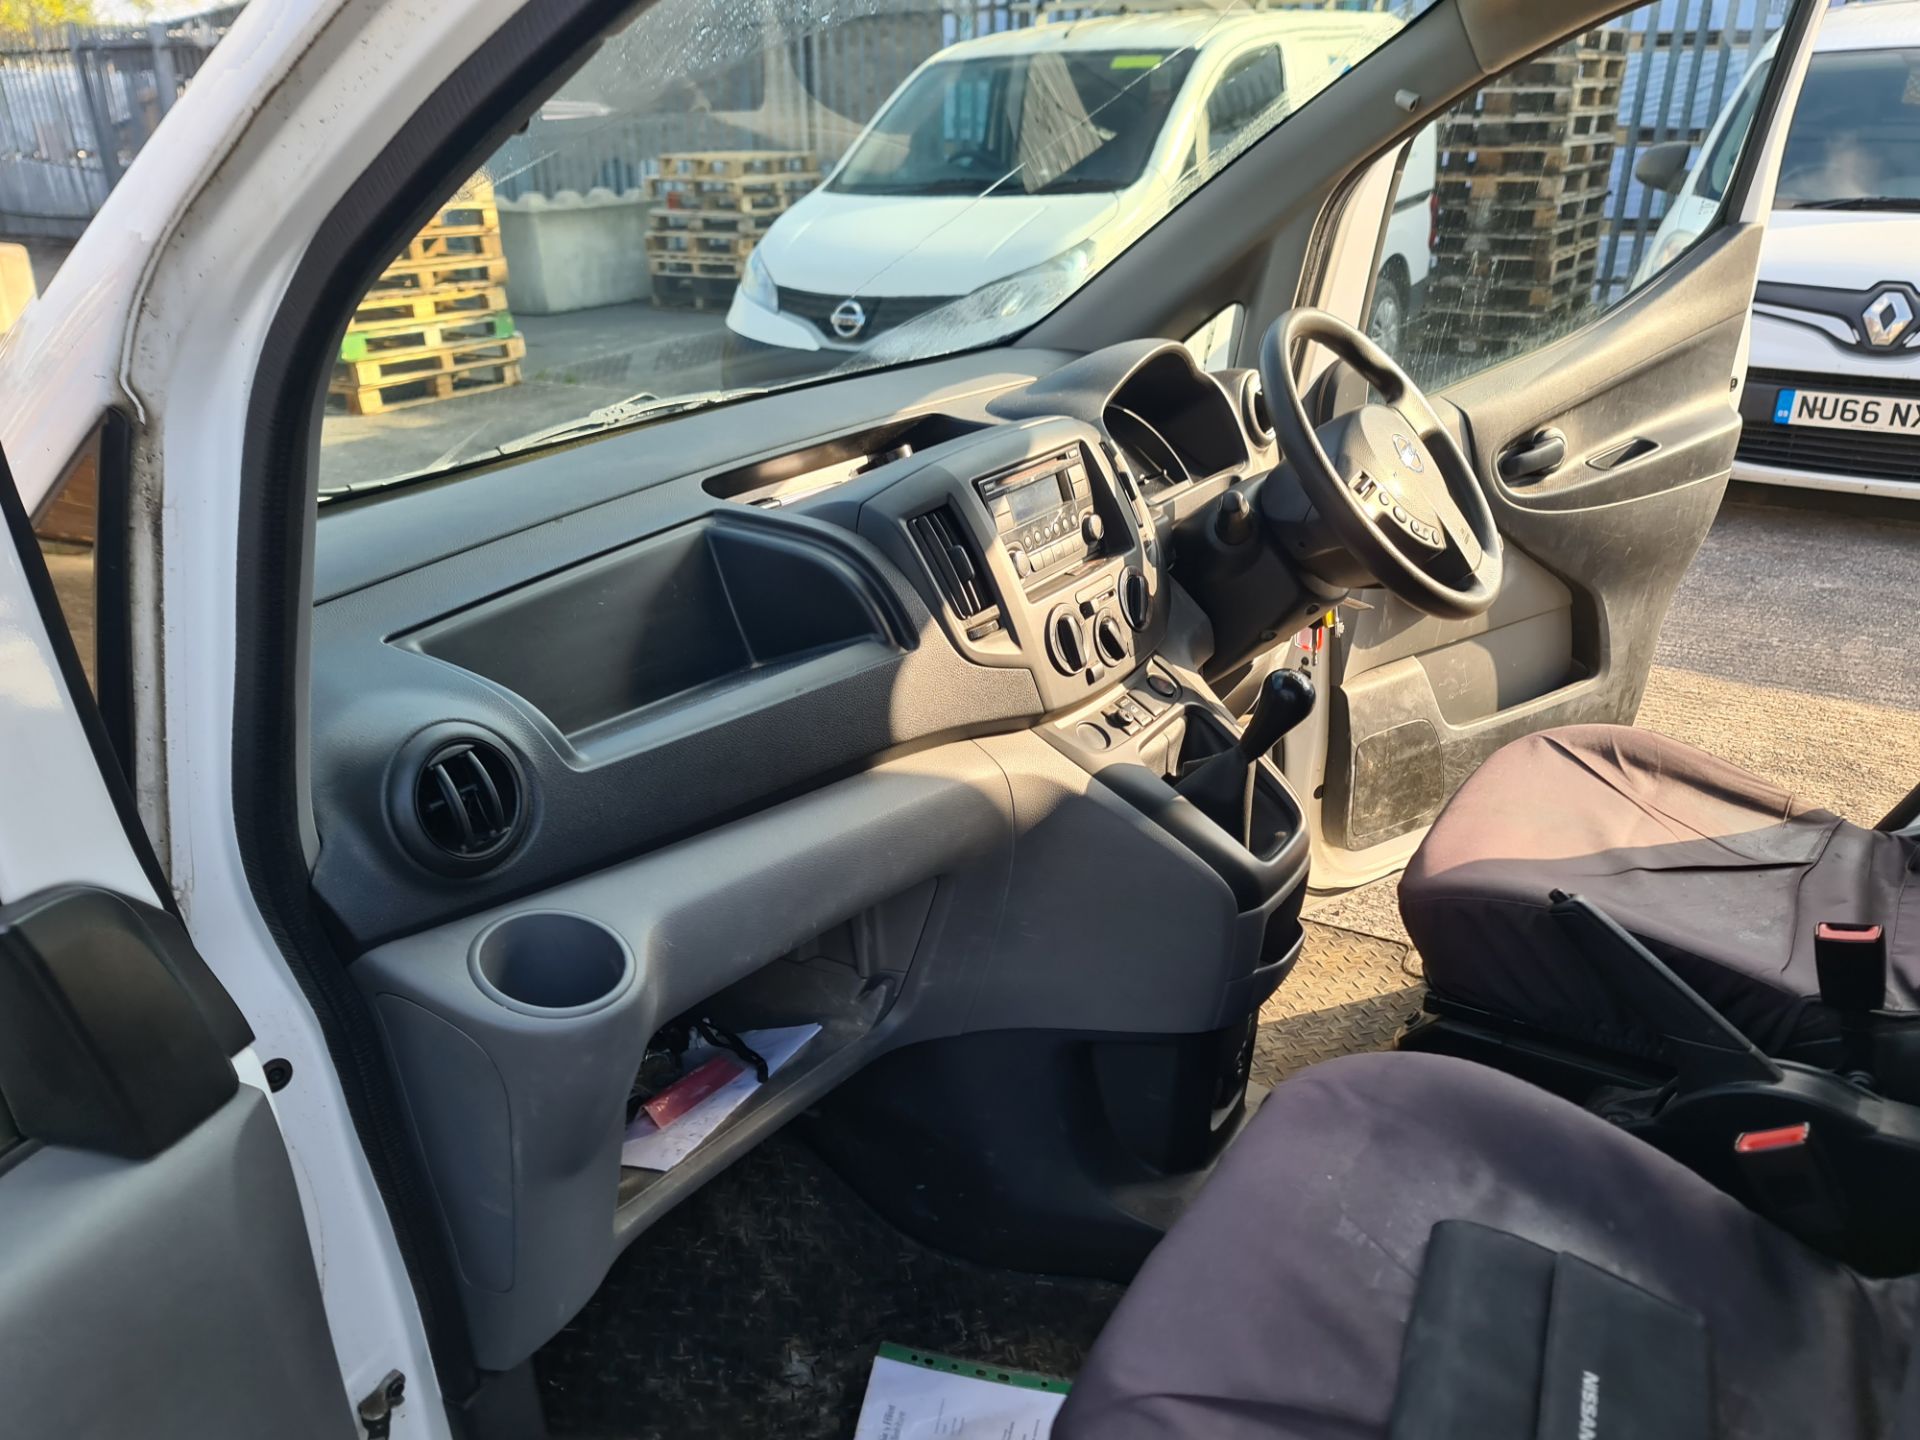 2018 Nissan NV200 Acenta DCI car derived van - Image 69 of 93